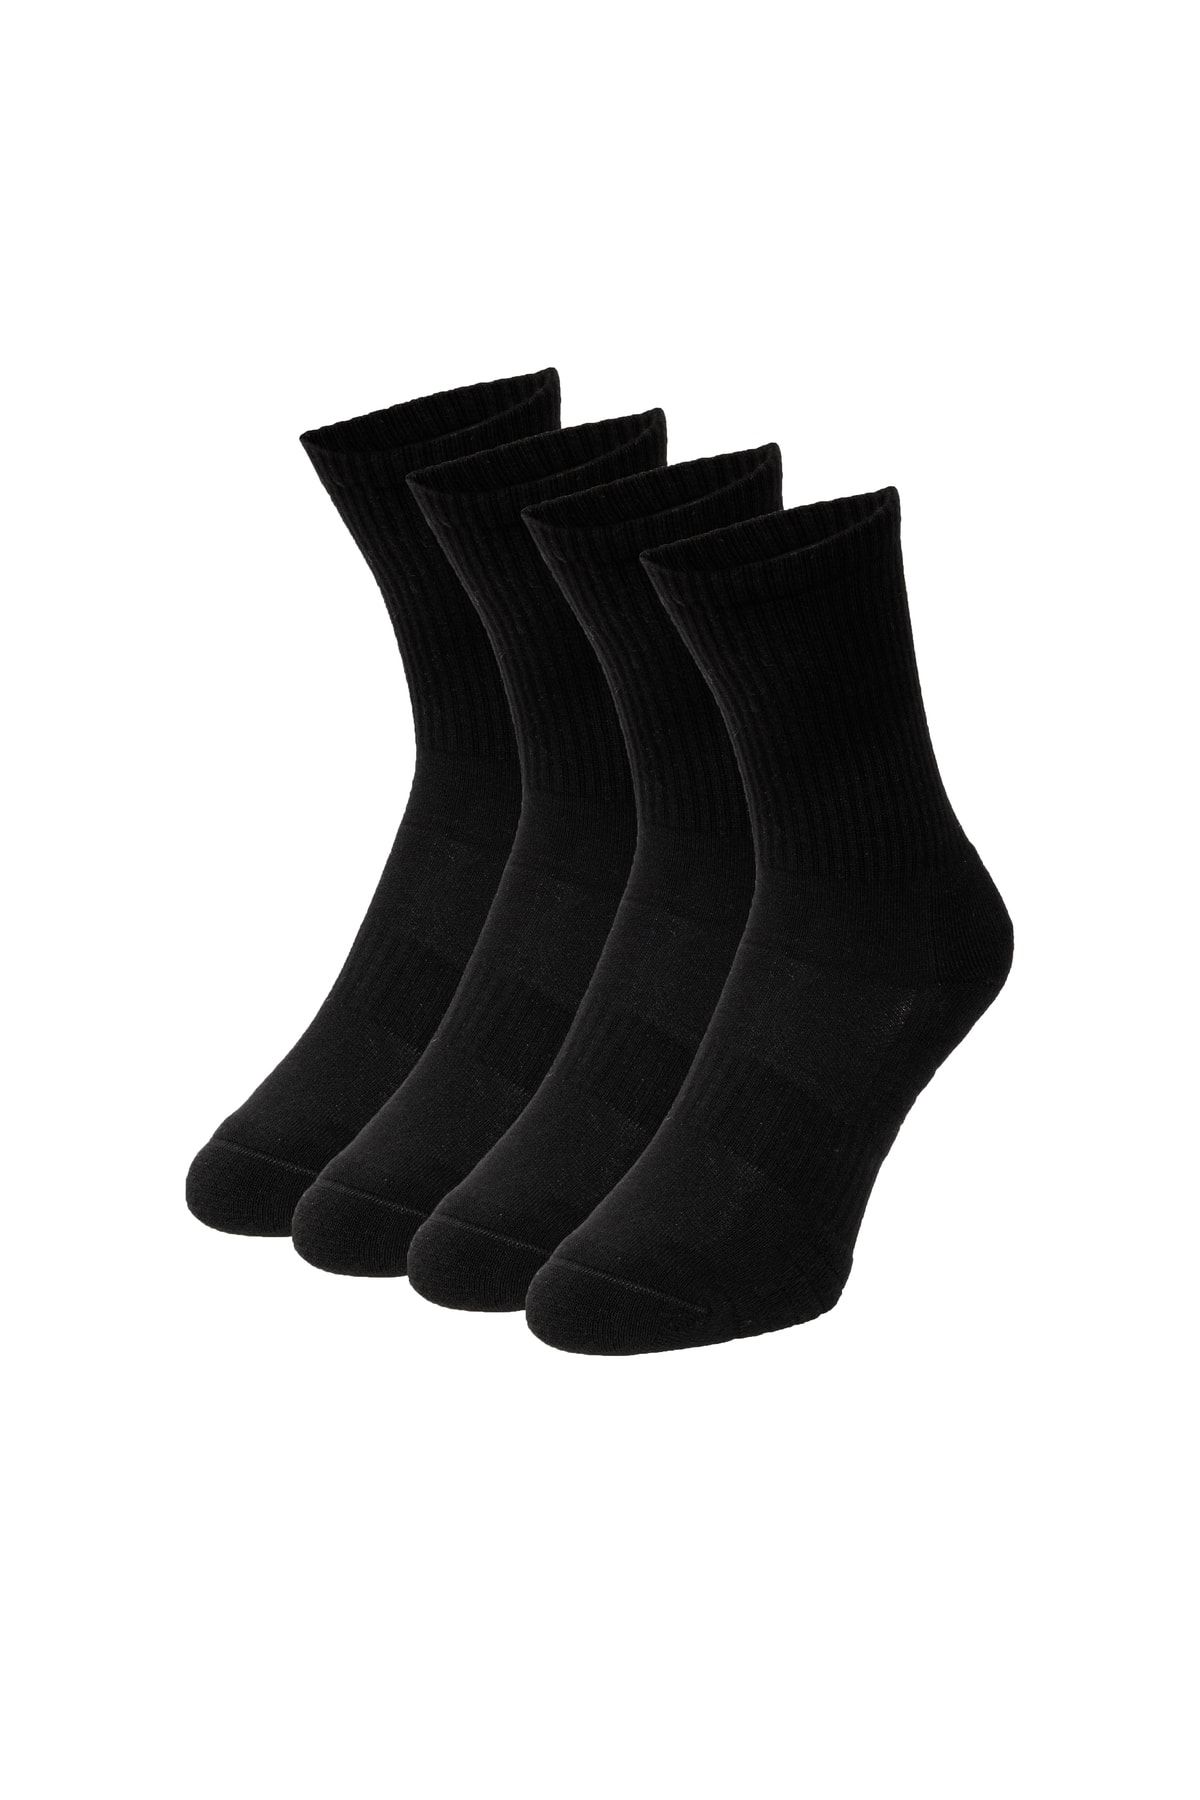 DuraSocks Erkek-kadın Spor Çorap, Antibakteriyel, Esnek, Dikişsiz Premium Çorap (4 Çift)